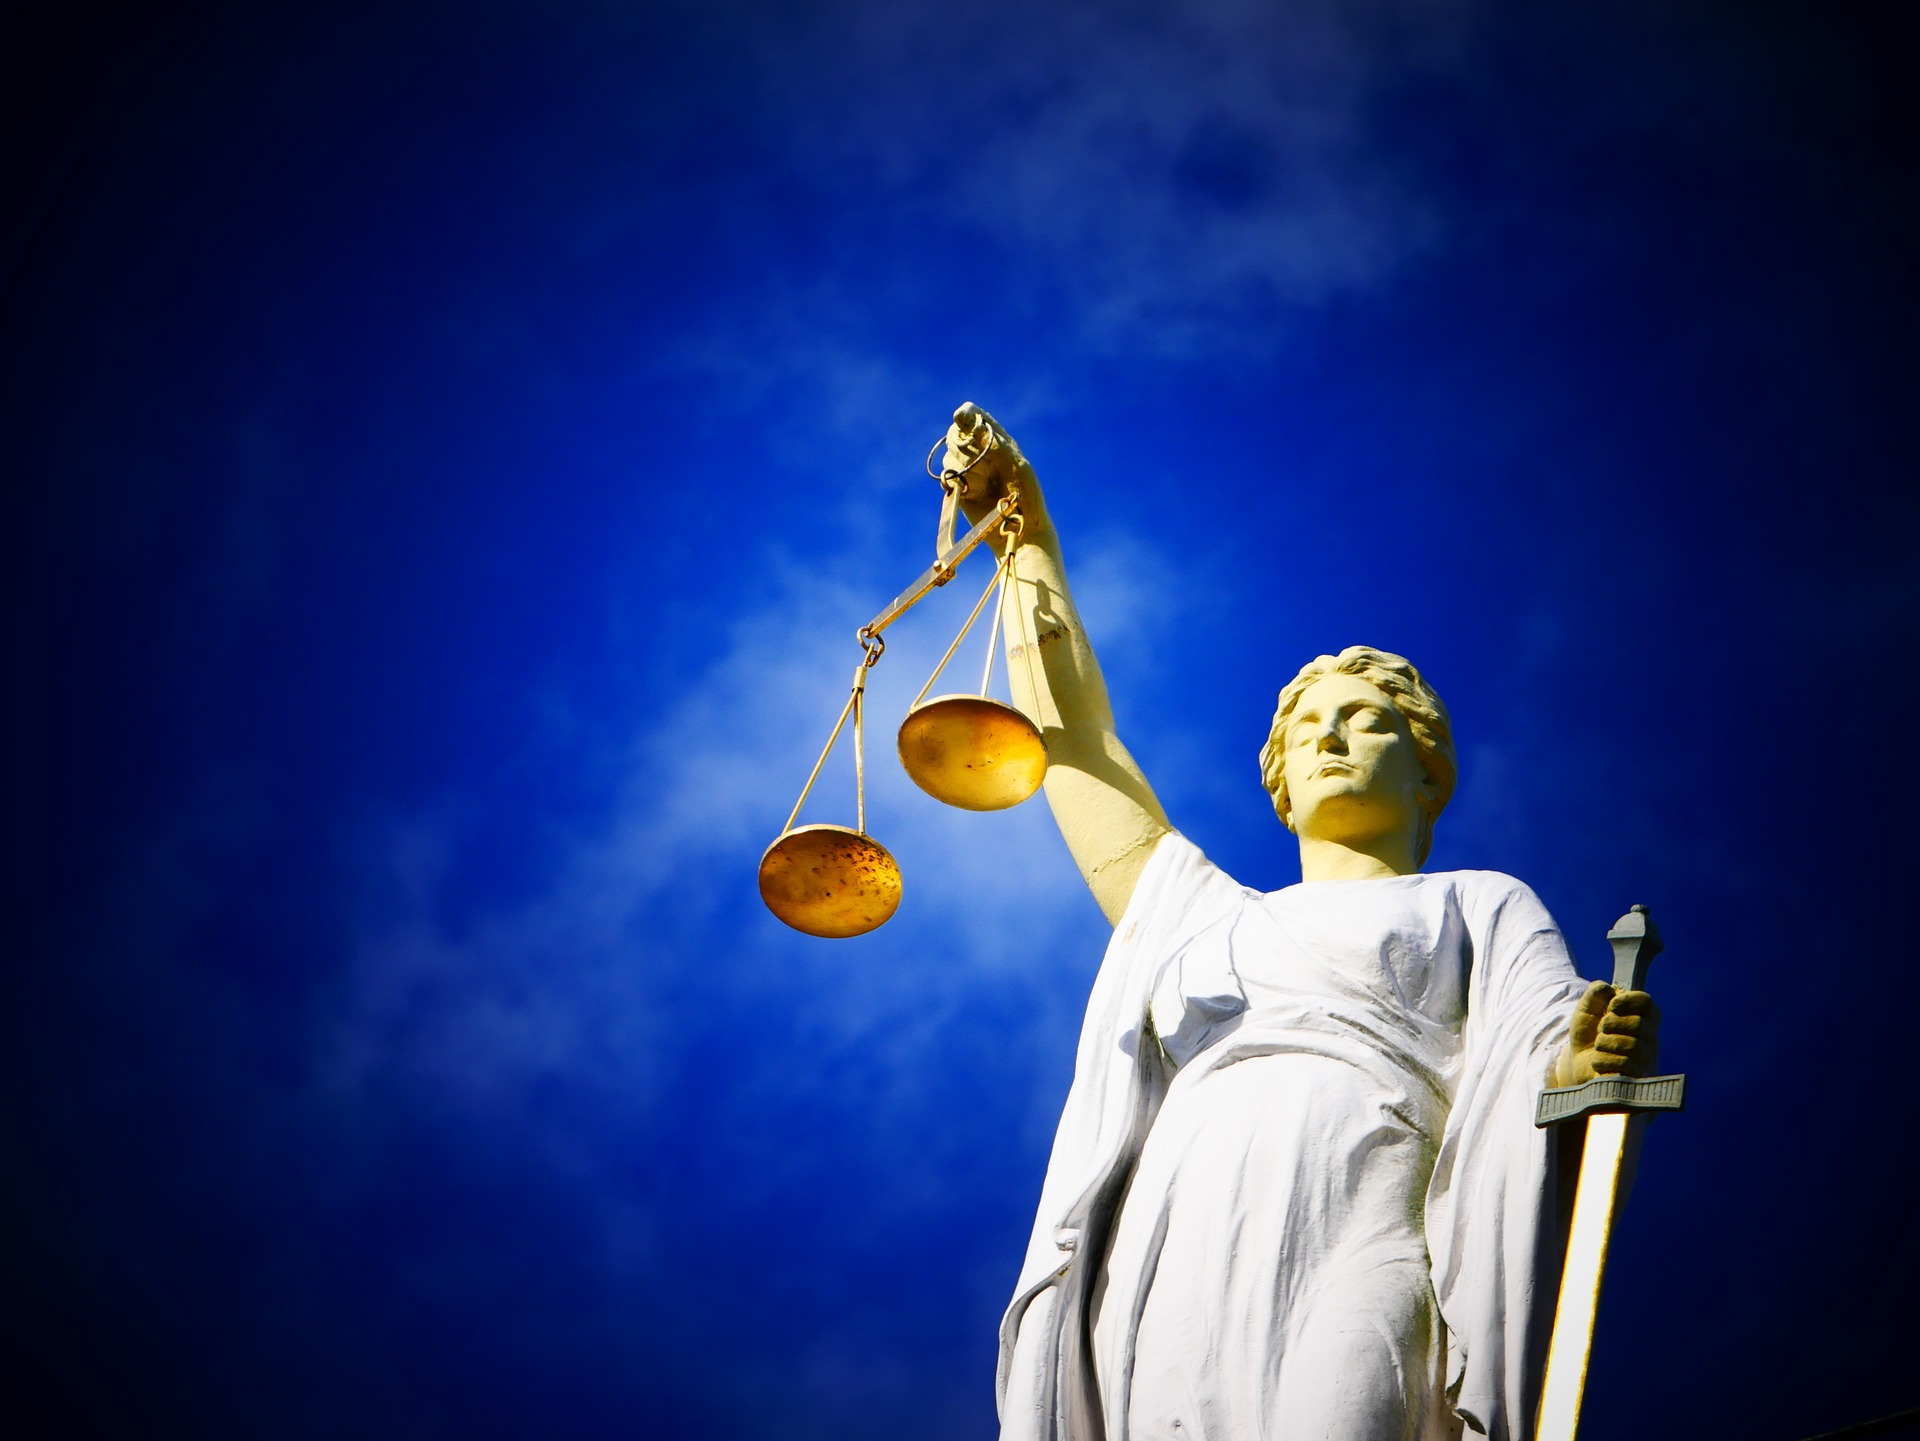 El sistema de justicia en tiempos de “infocracia”